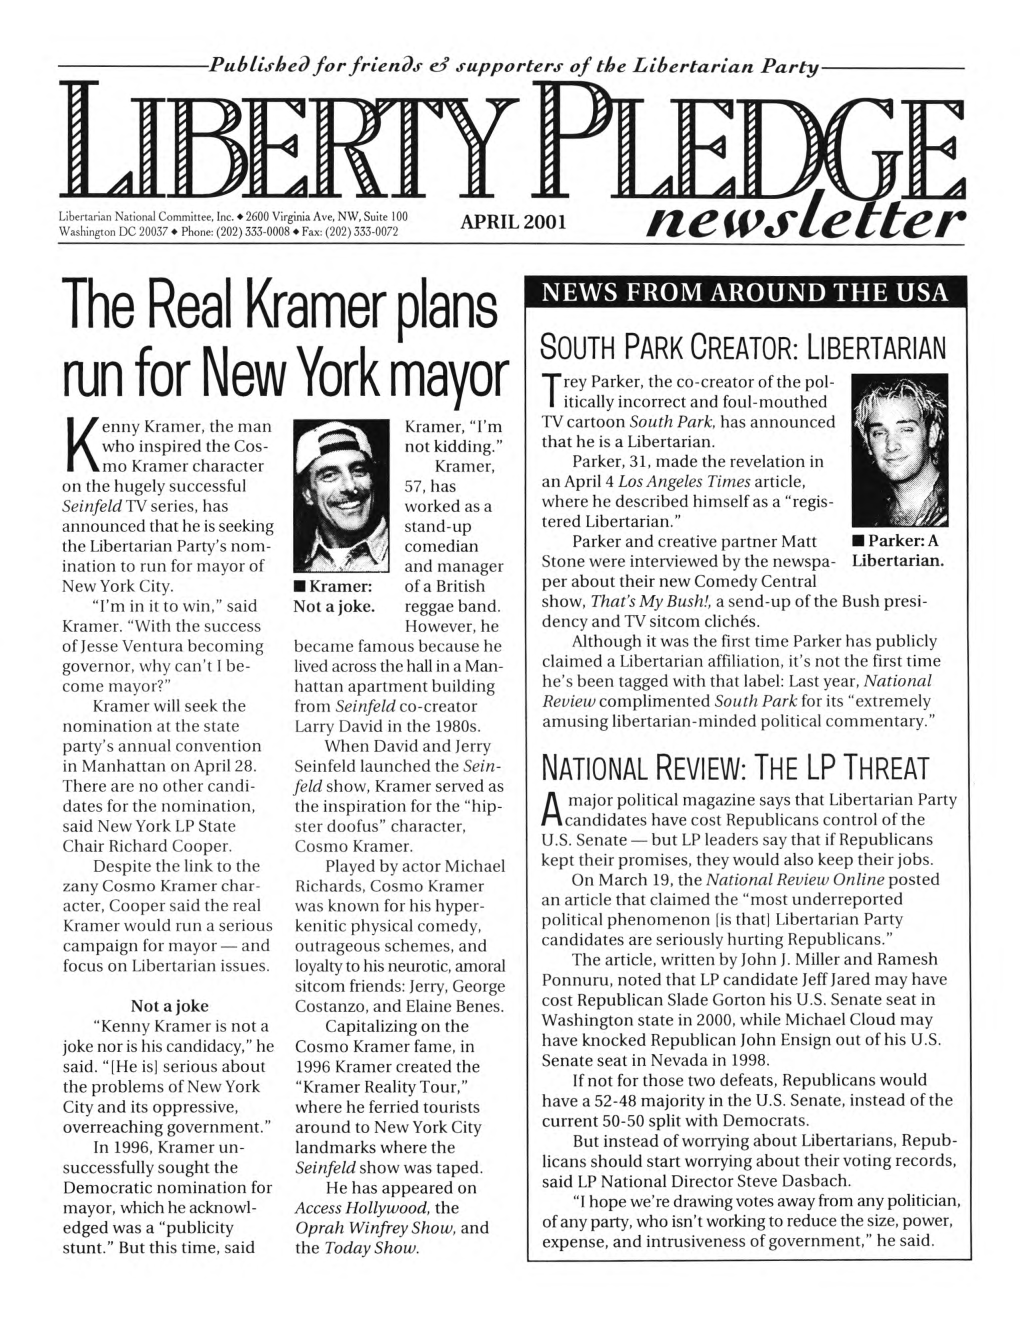 The Real Kramer Plans Run for New York Mayor